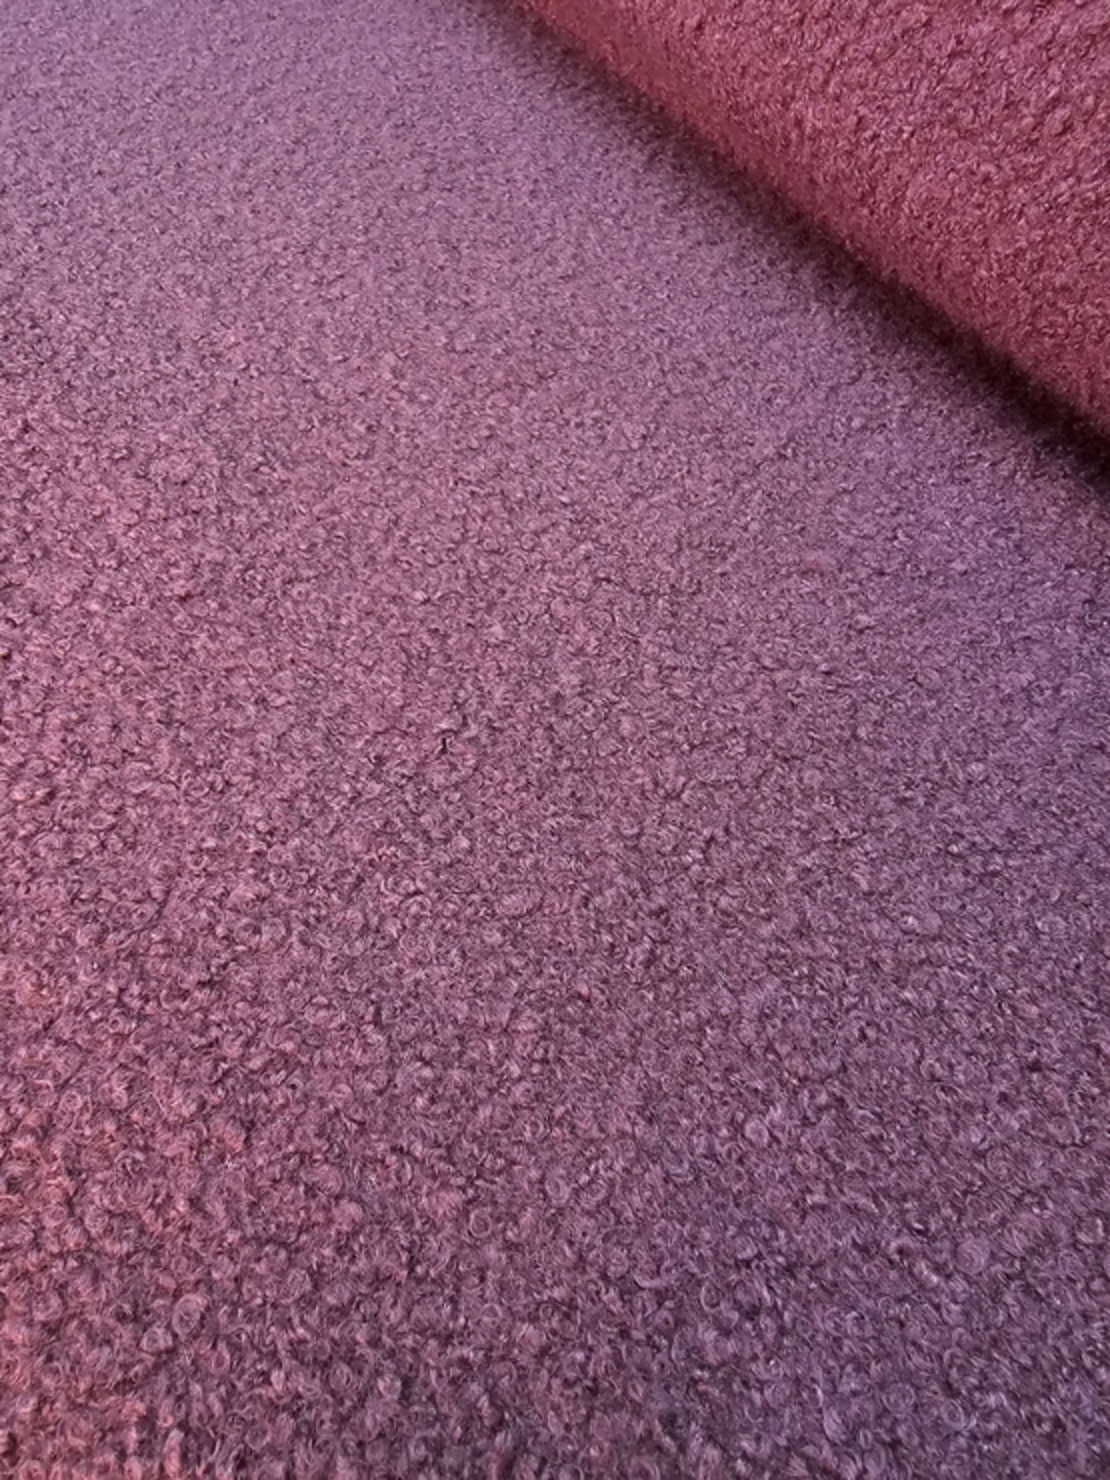 אריג בוקלה צבע סגול דגם טדי